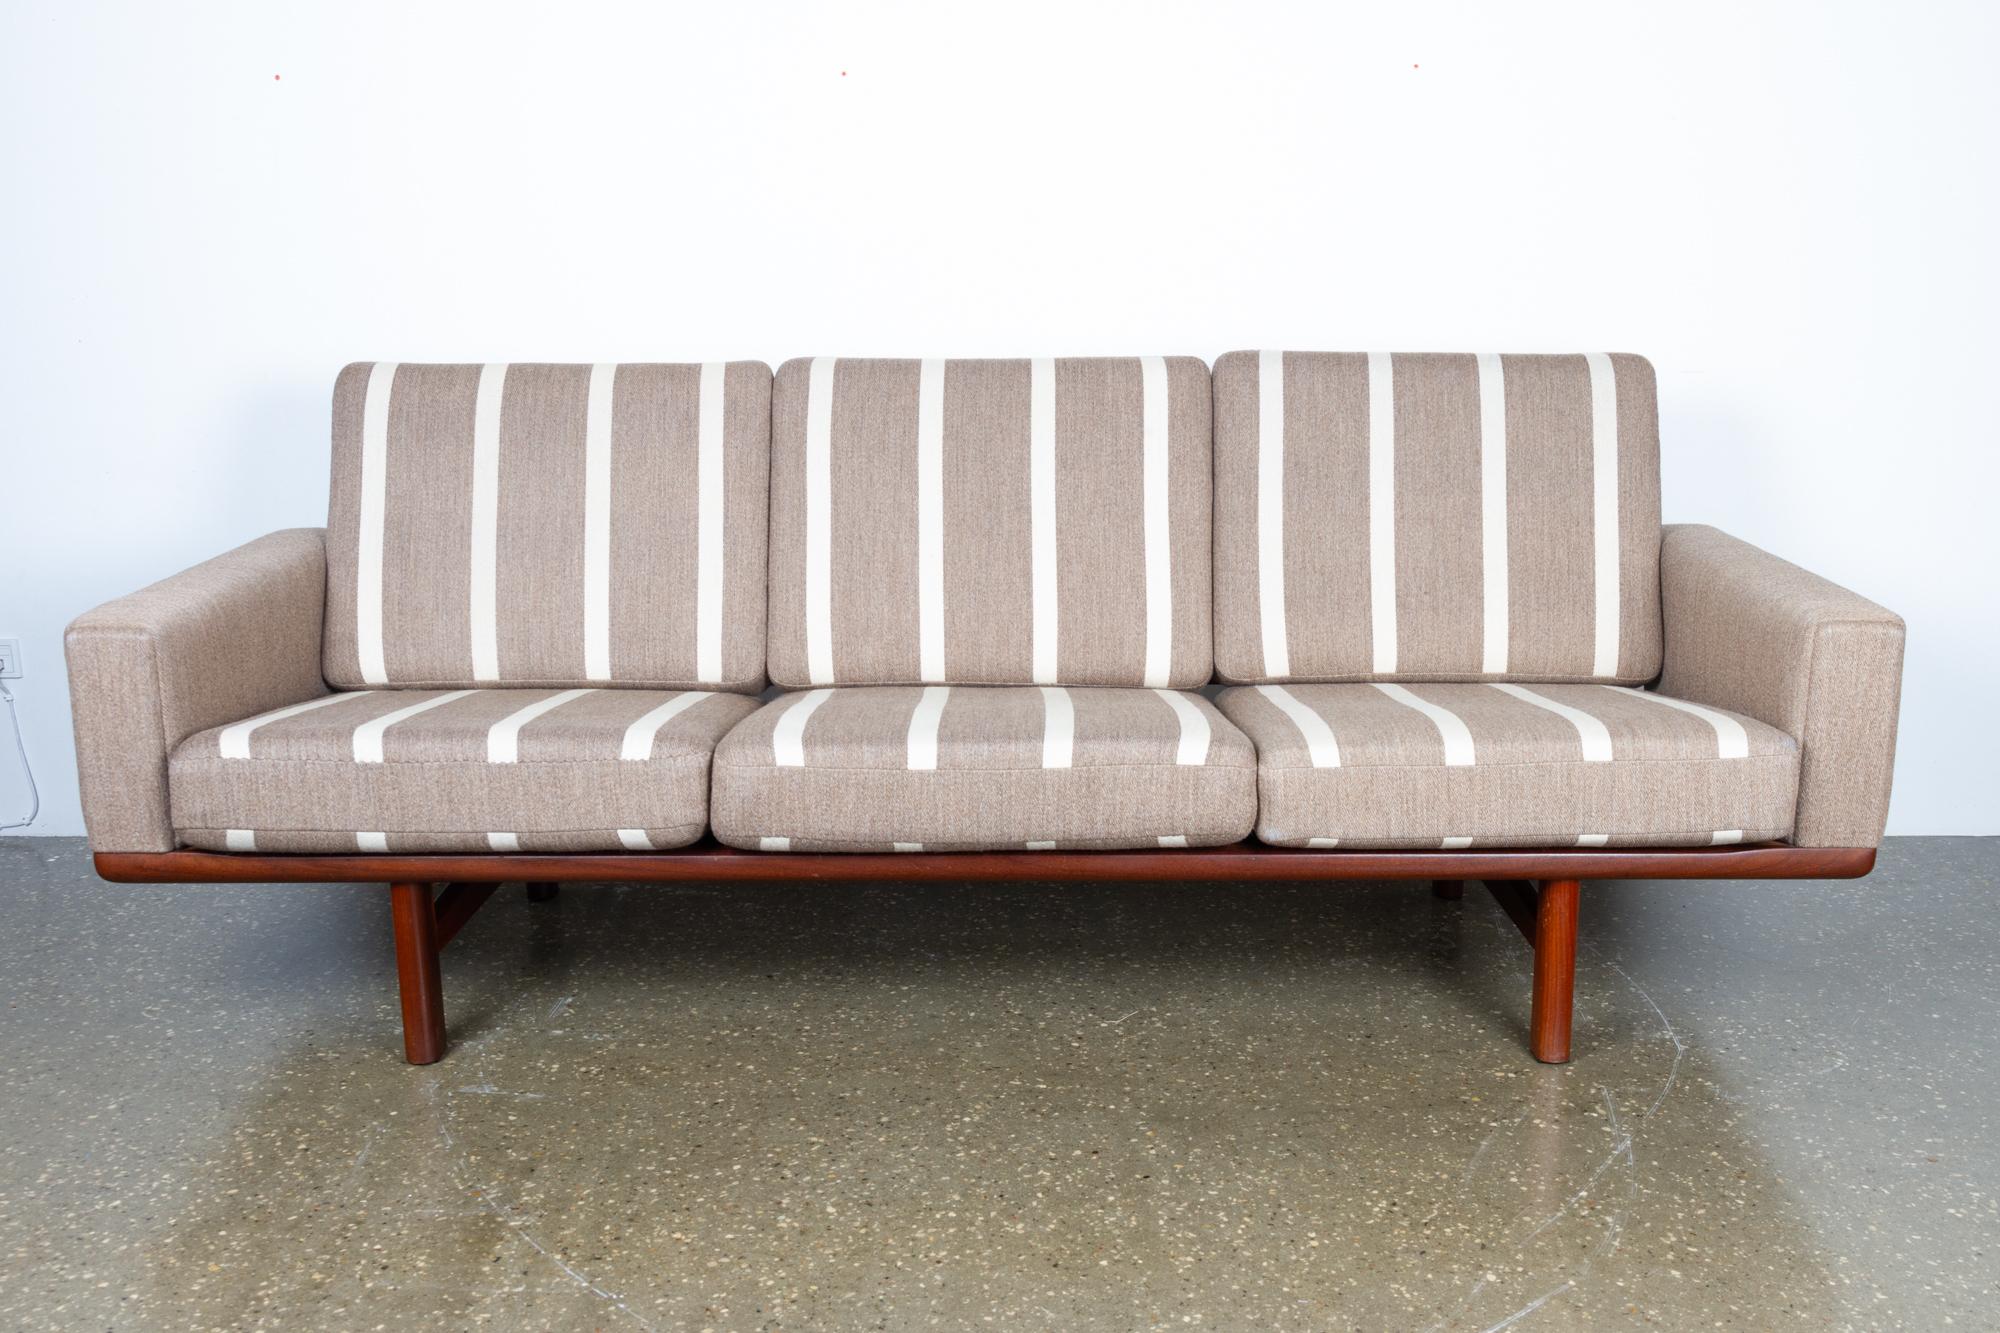 Teak GE-236 Three-Seat Sofa by Hans J. Wegner for GETAMA, 1960s